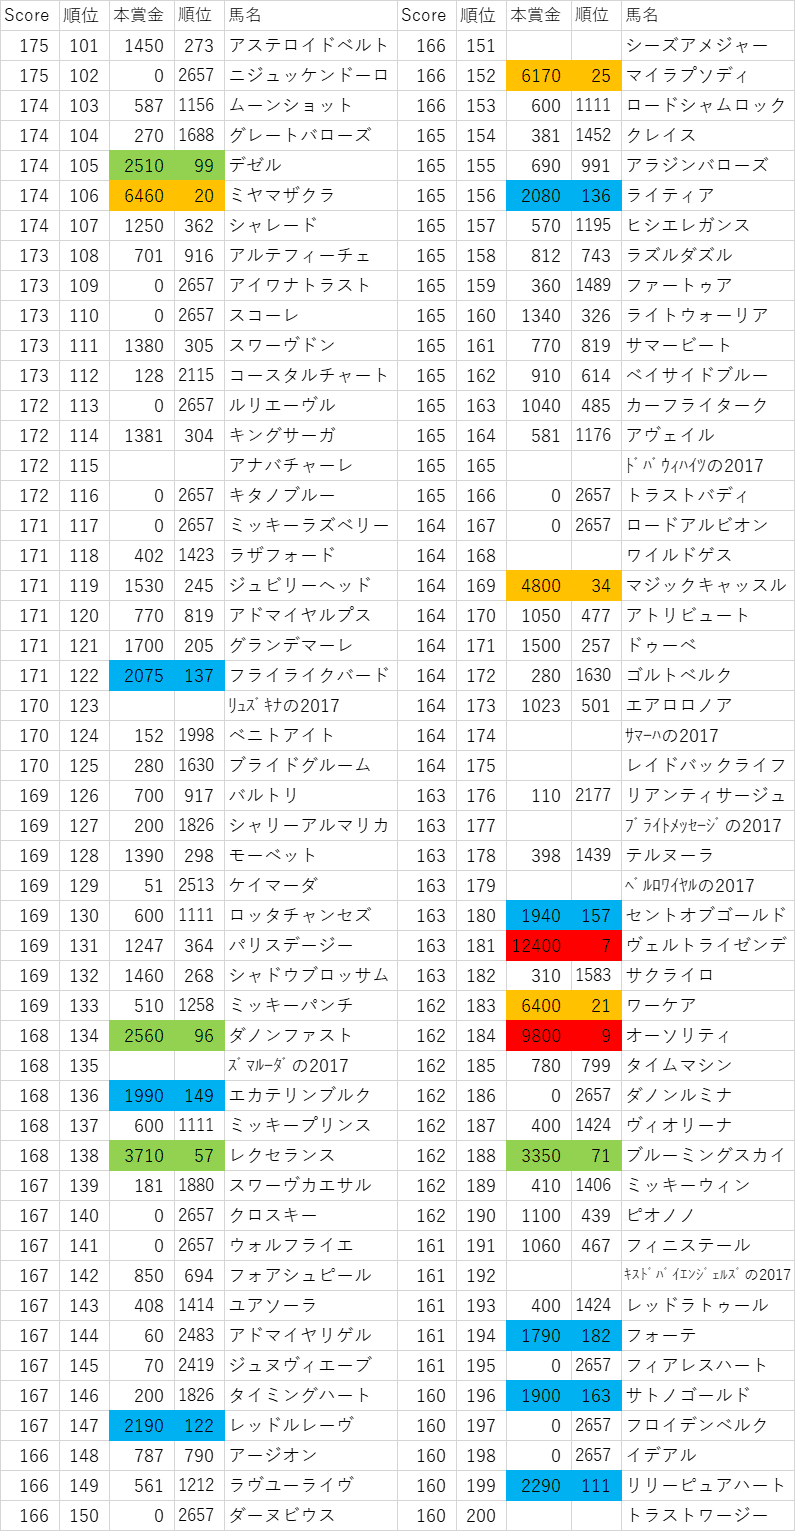 2017年産駒スコア101~200位